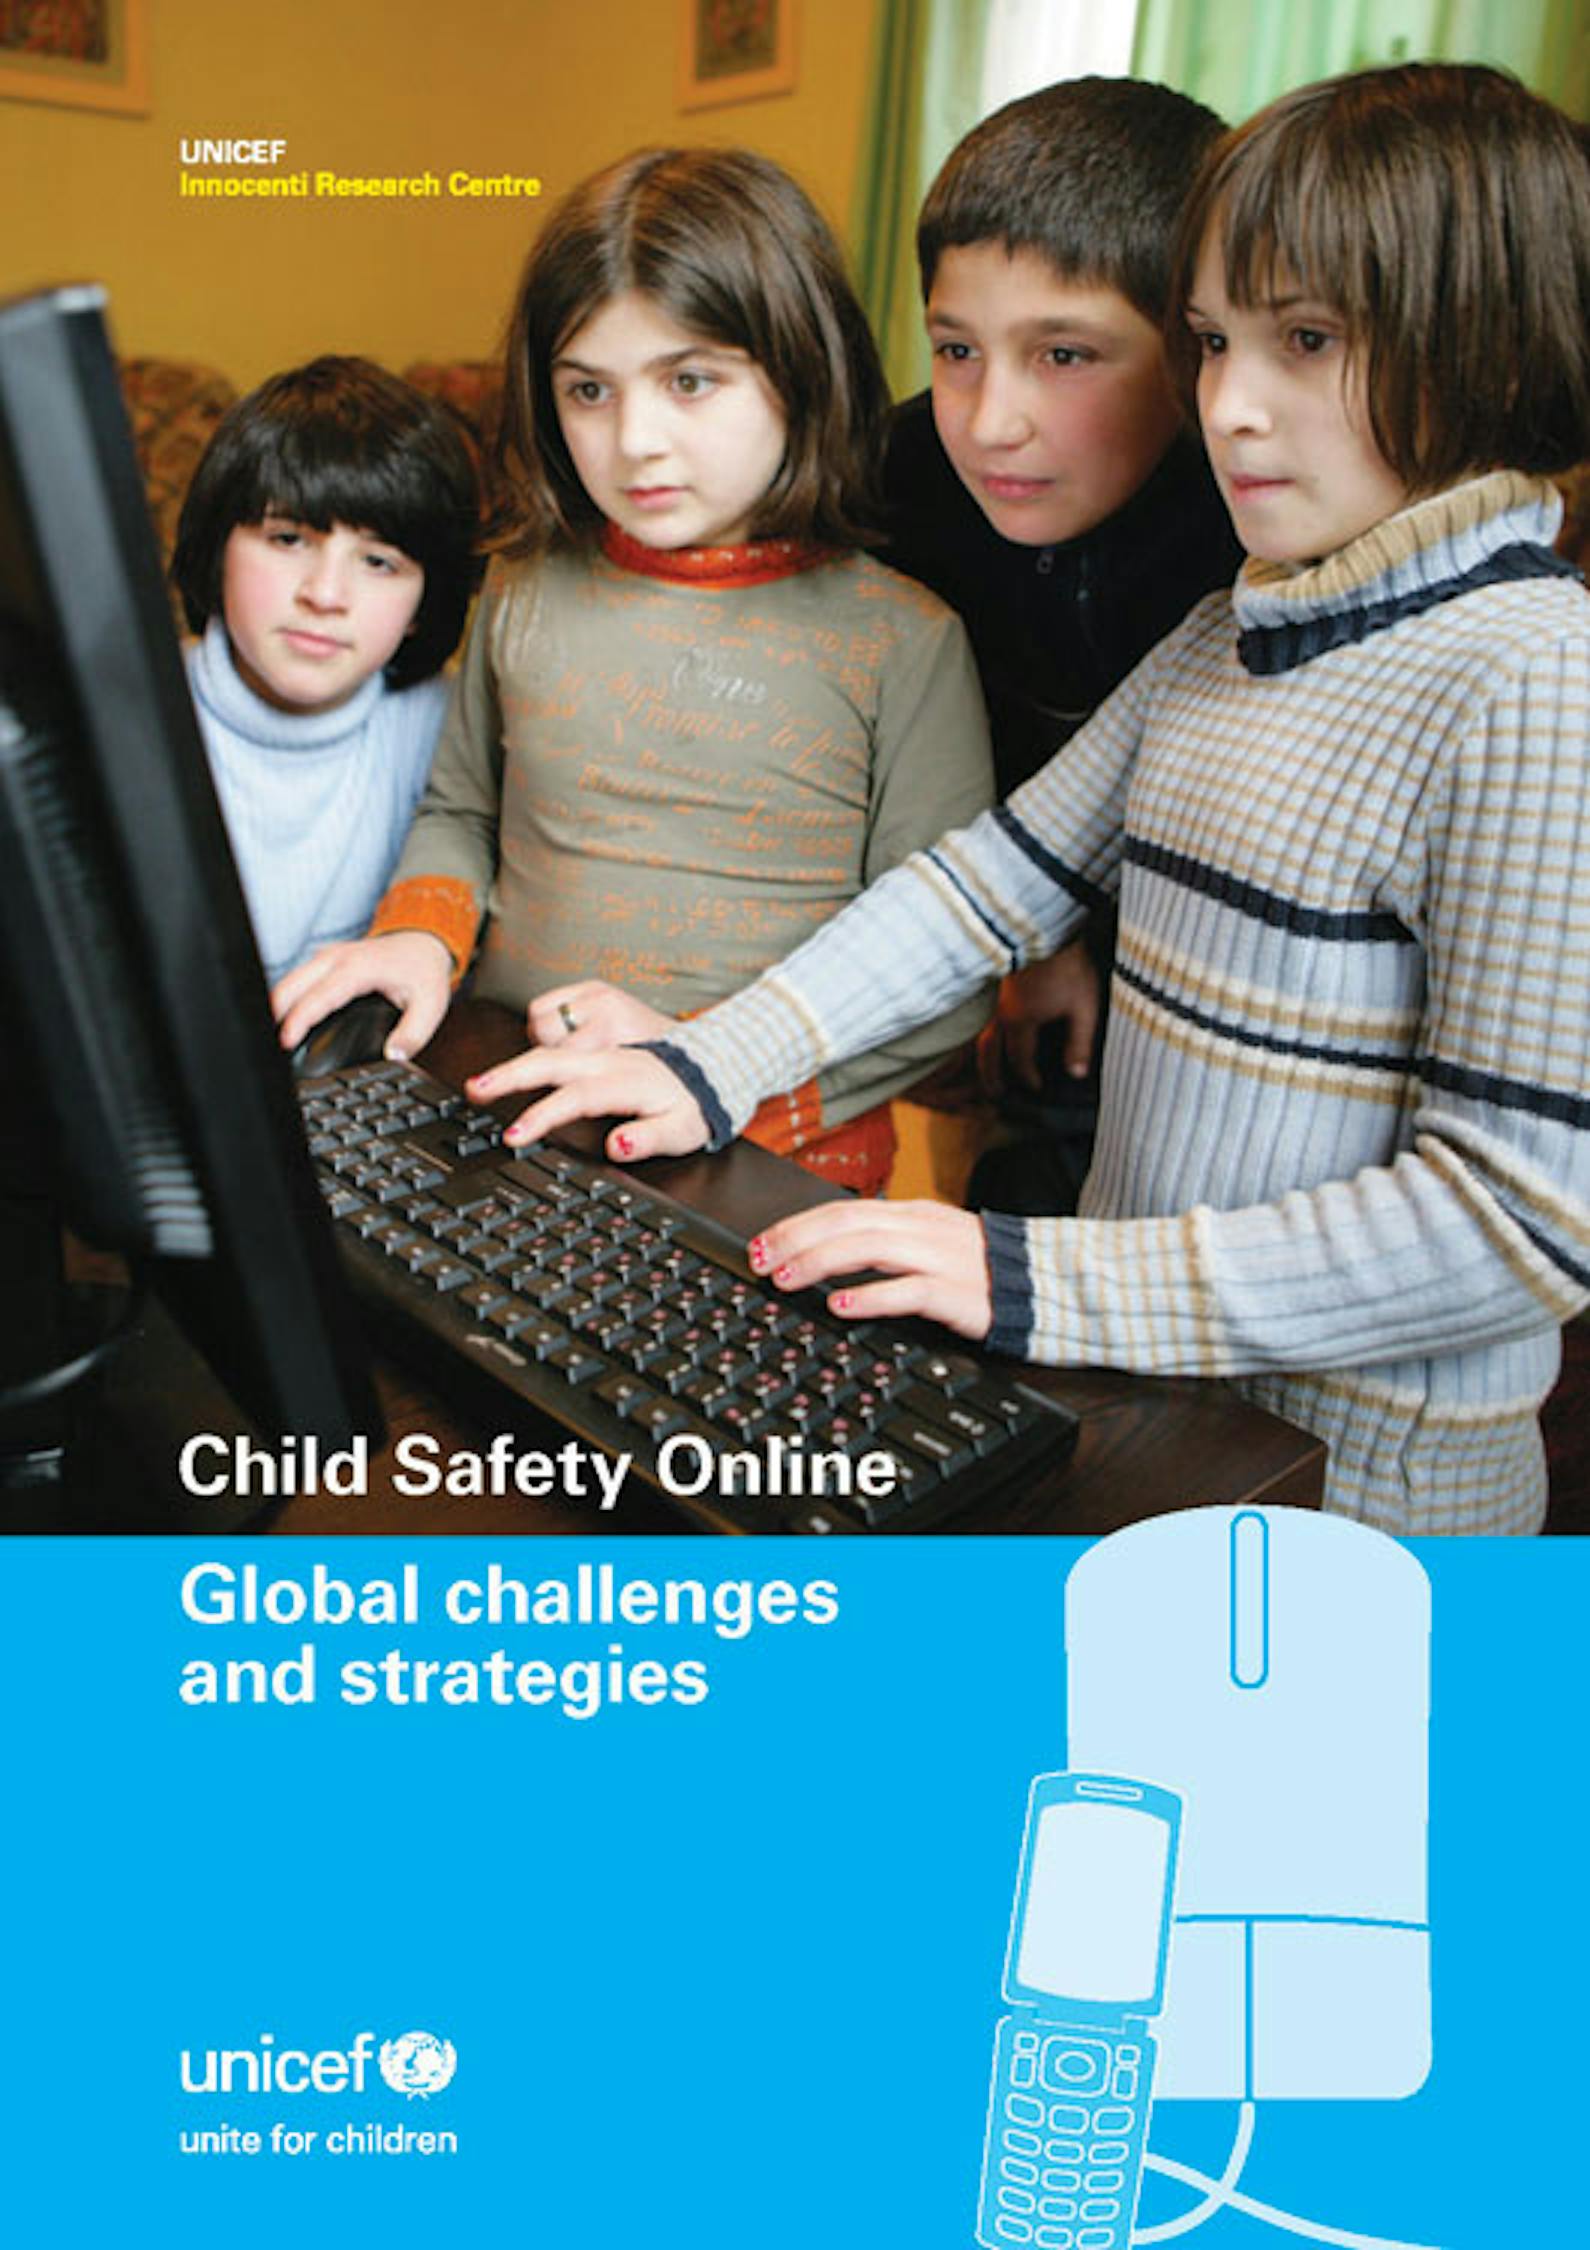 Child Safety Online